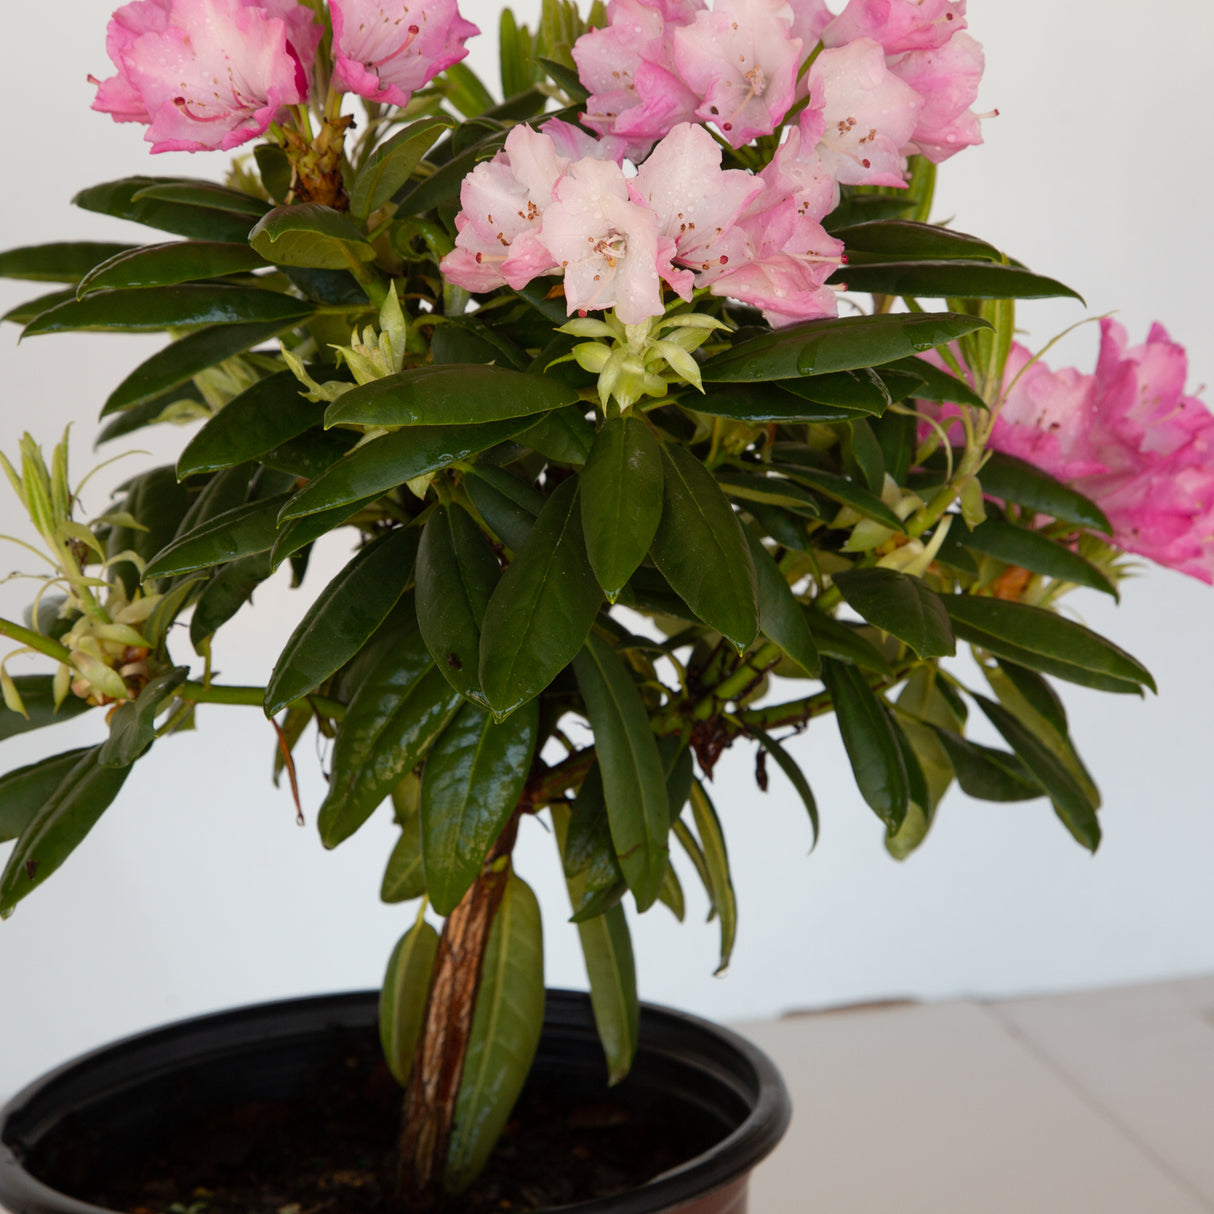 Southgate Brandi Rhododendron